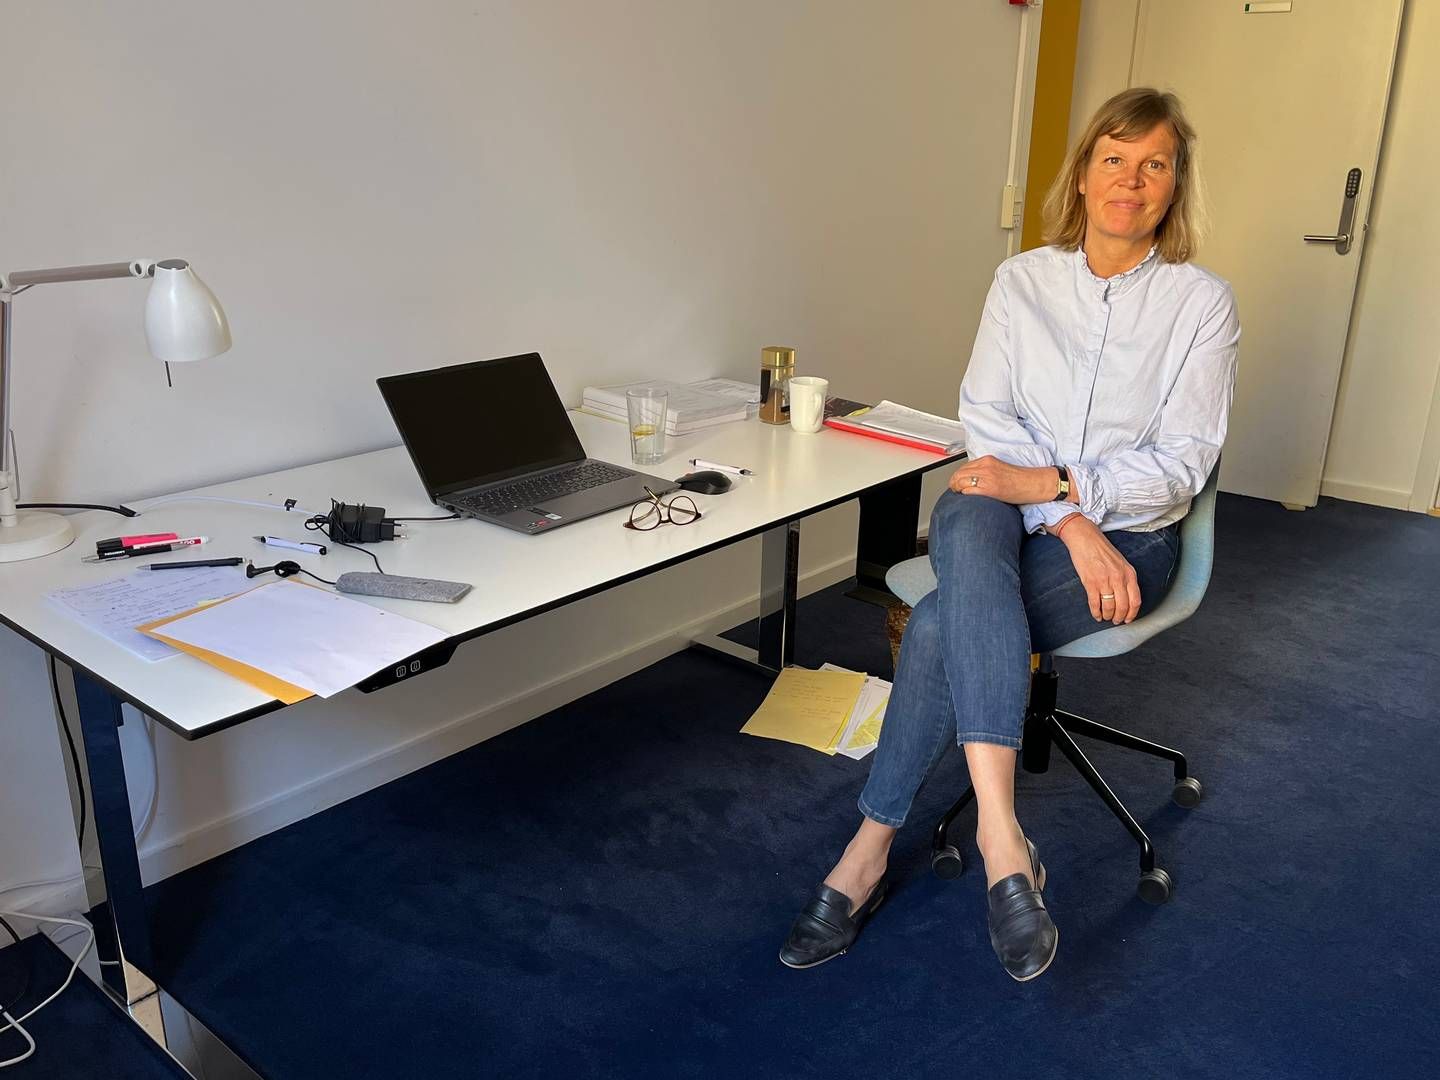 Ellen Margrethe Bleeg har endnu ikke fået færdigindrettet sit kontor, men klarer sig foreløbig med sin laptop, et nyindkøbt hæve-sænkebord og en lånt kontorstol. | Foto: Birgit Straarup / Watch Medier